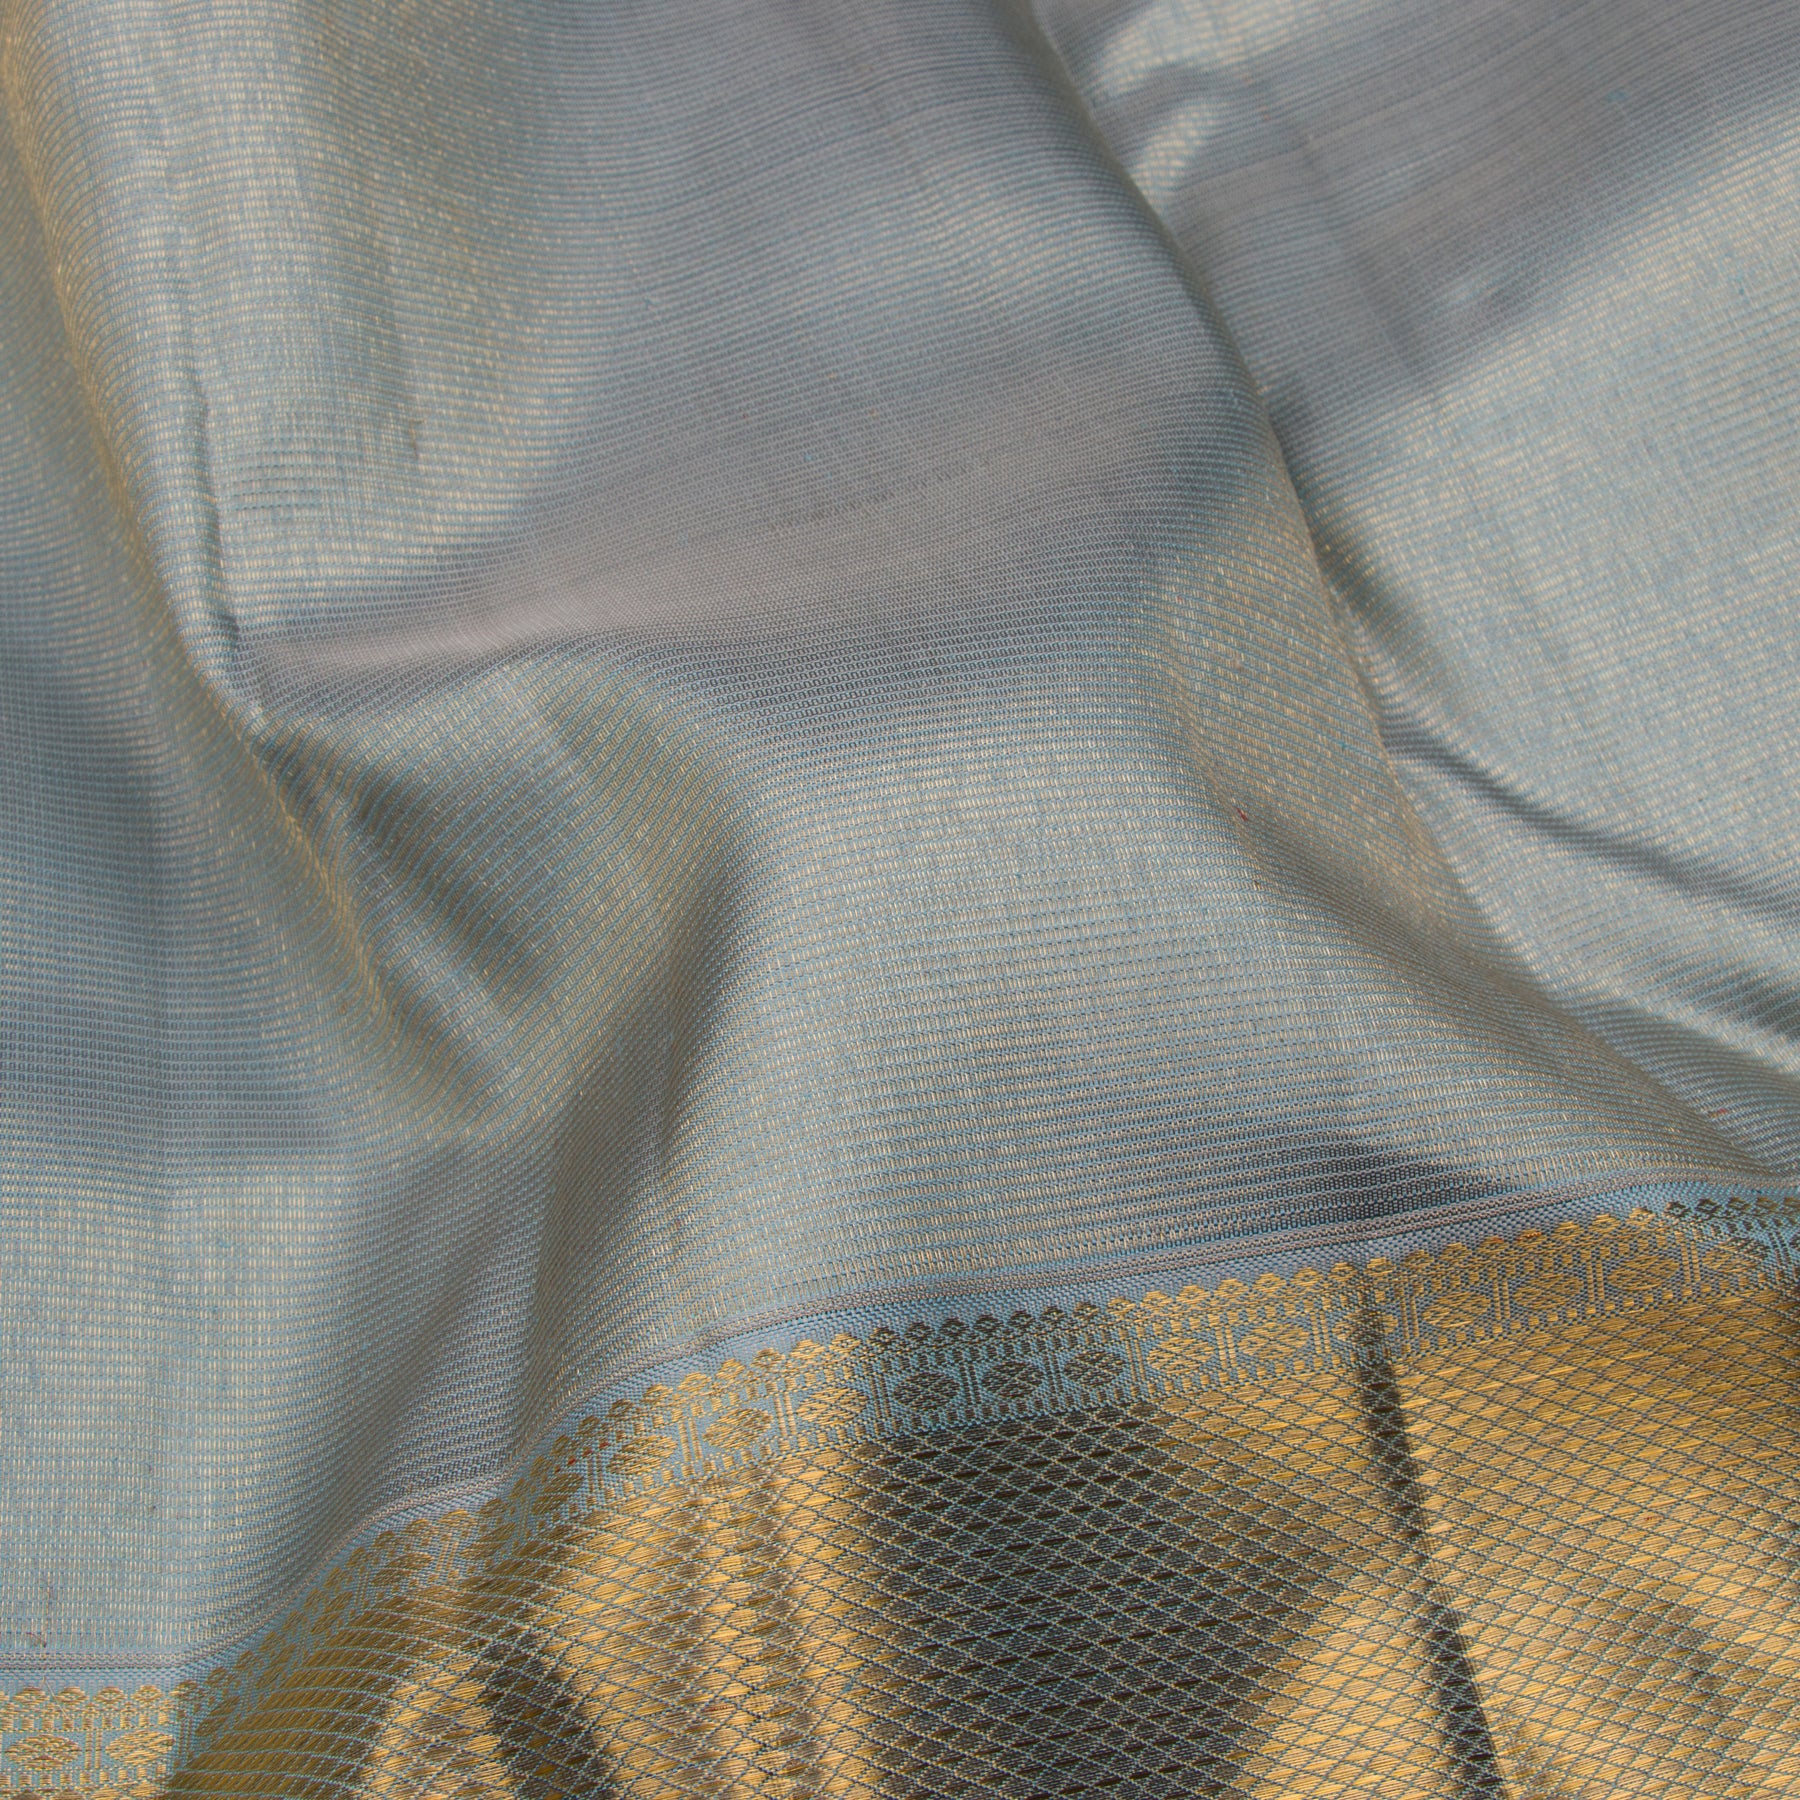 Kanakavalli Kanjivaram Silk Sari 23-599-HS001-09756 - Fabric View